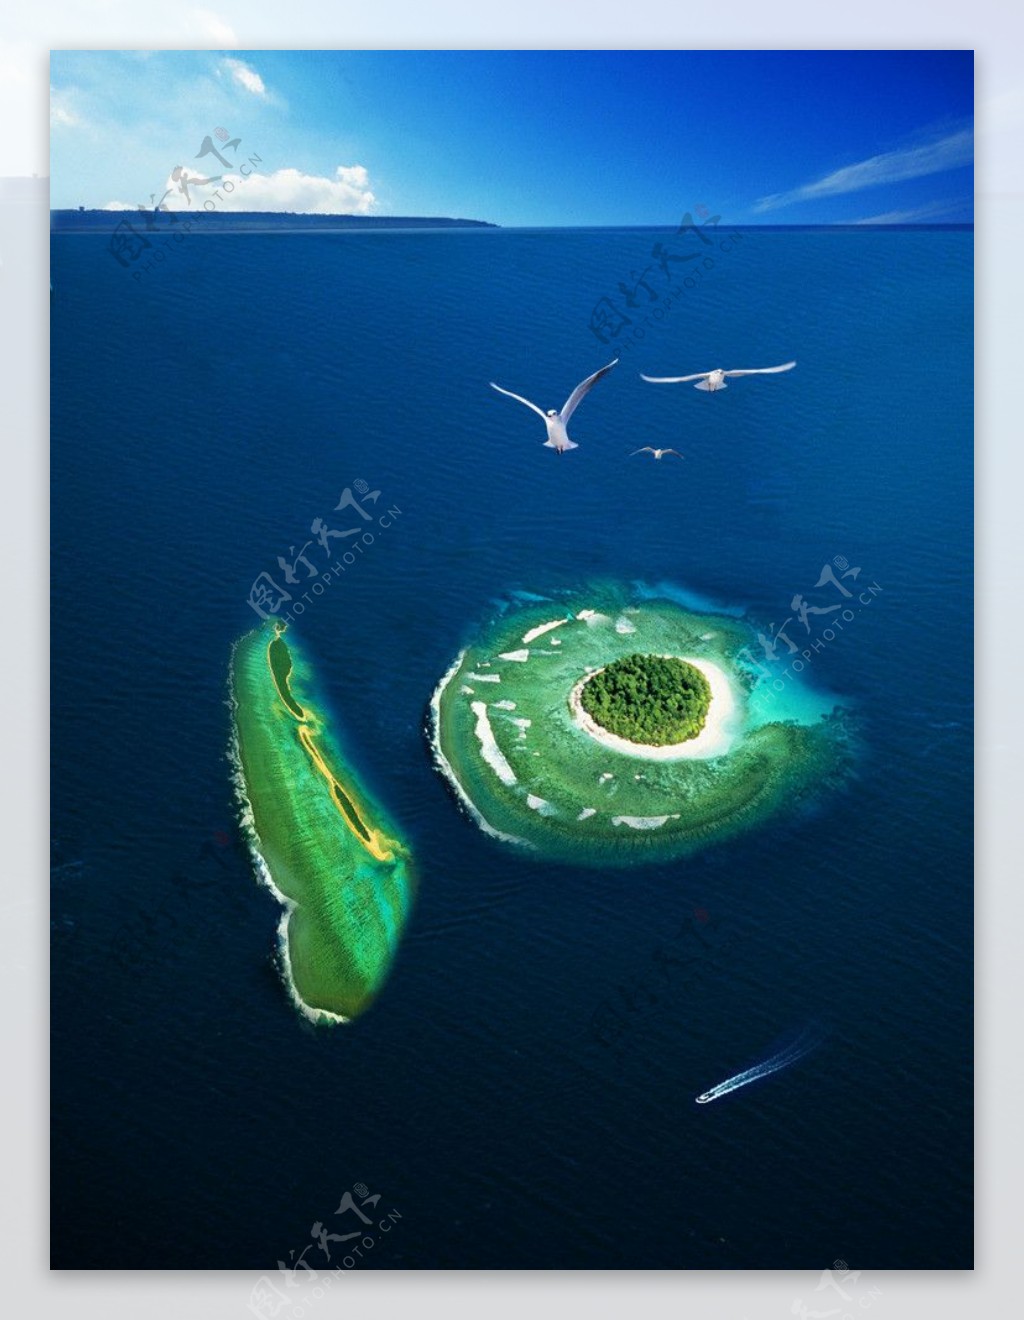 海岛风情图片